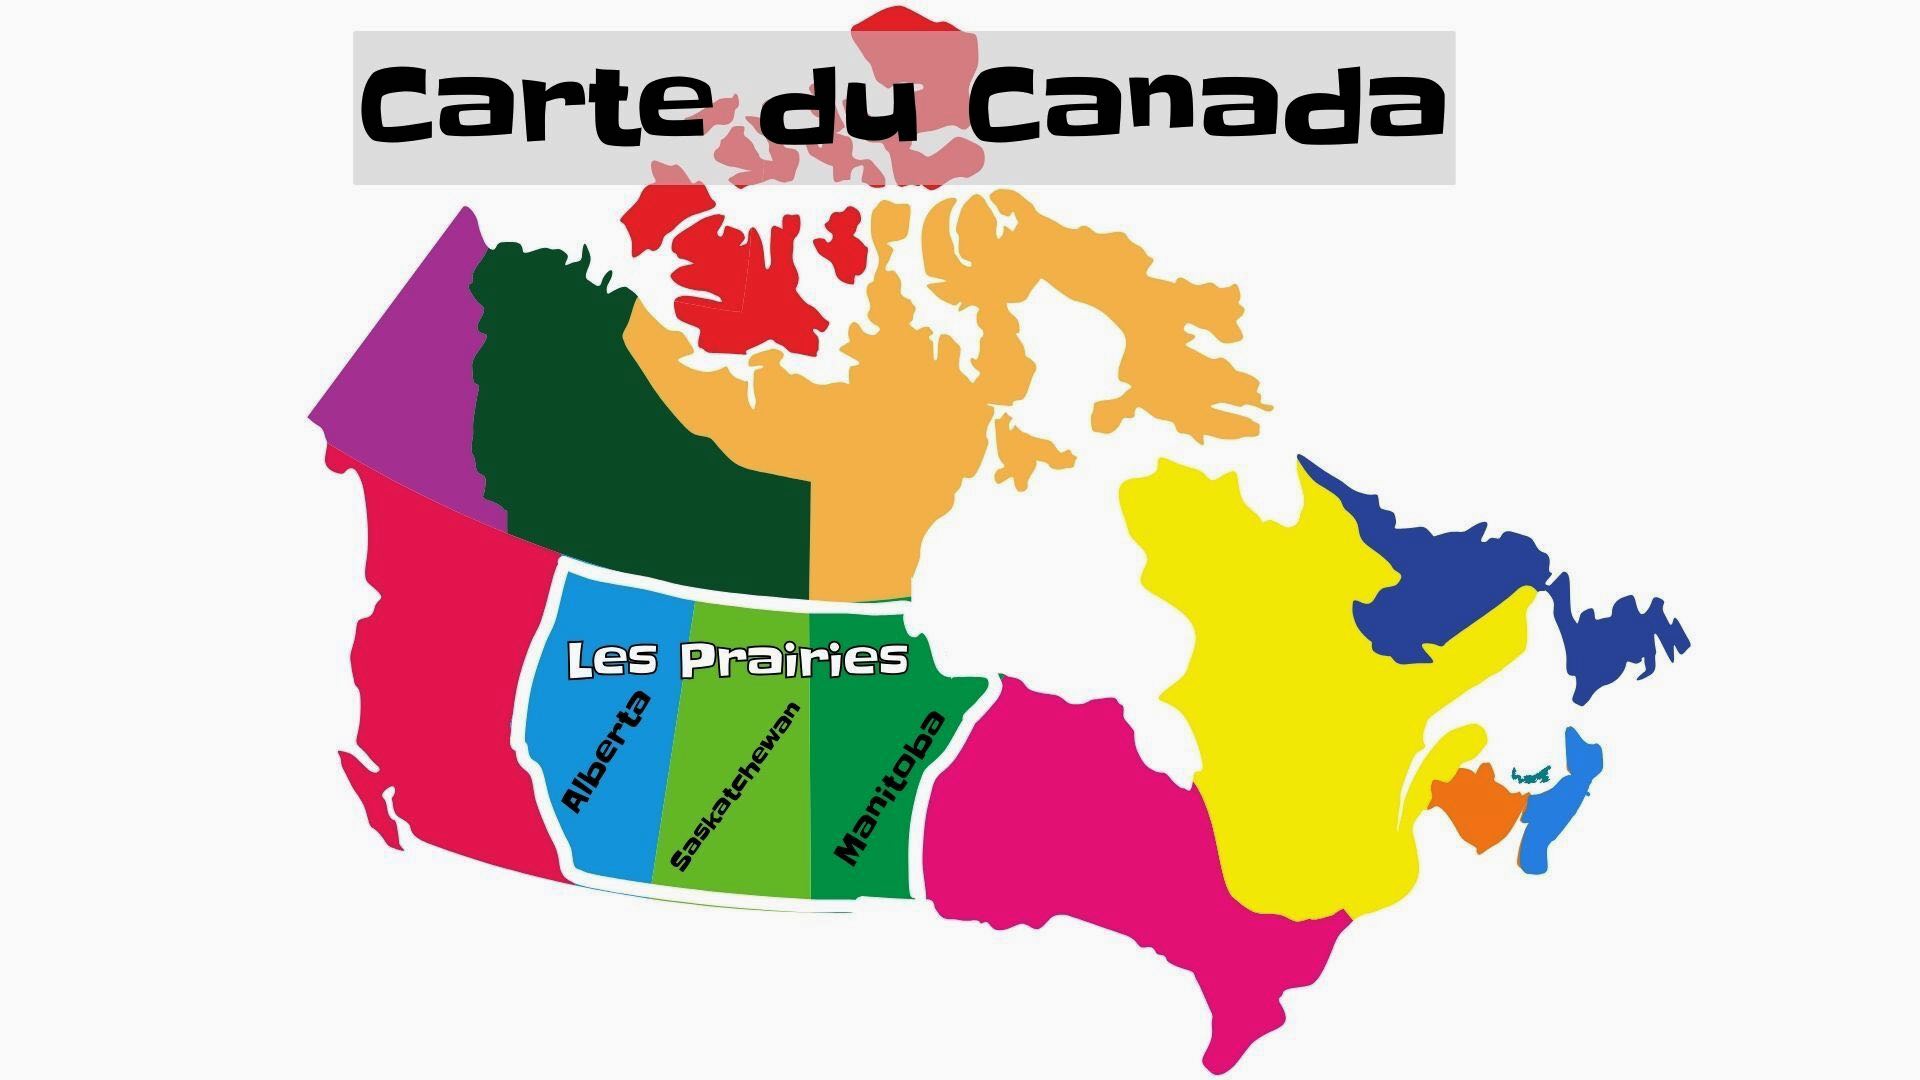 Carte des Prairies au Canada.